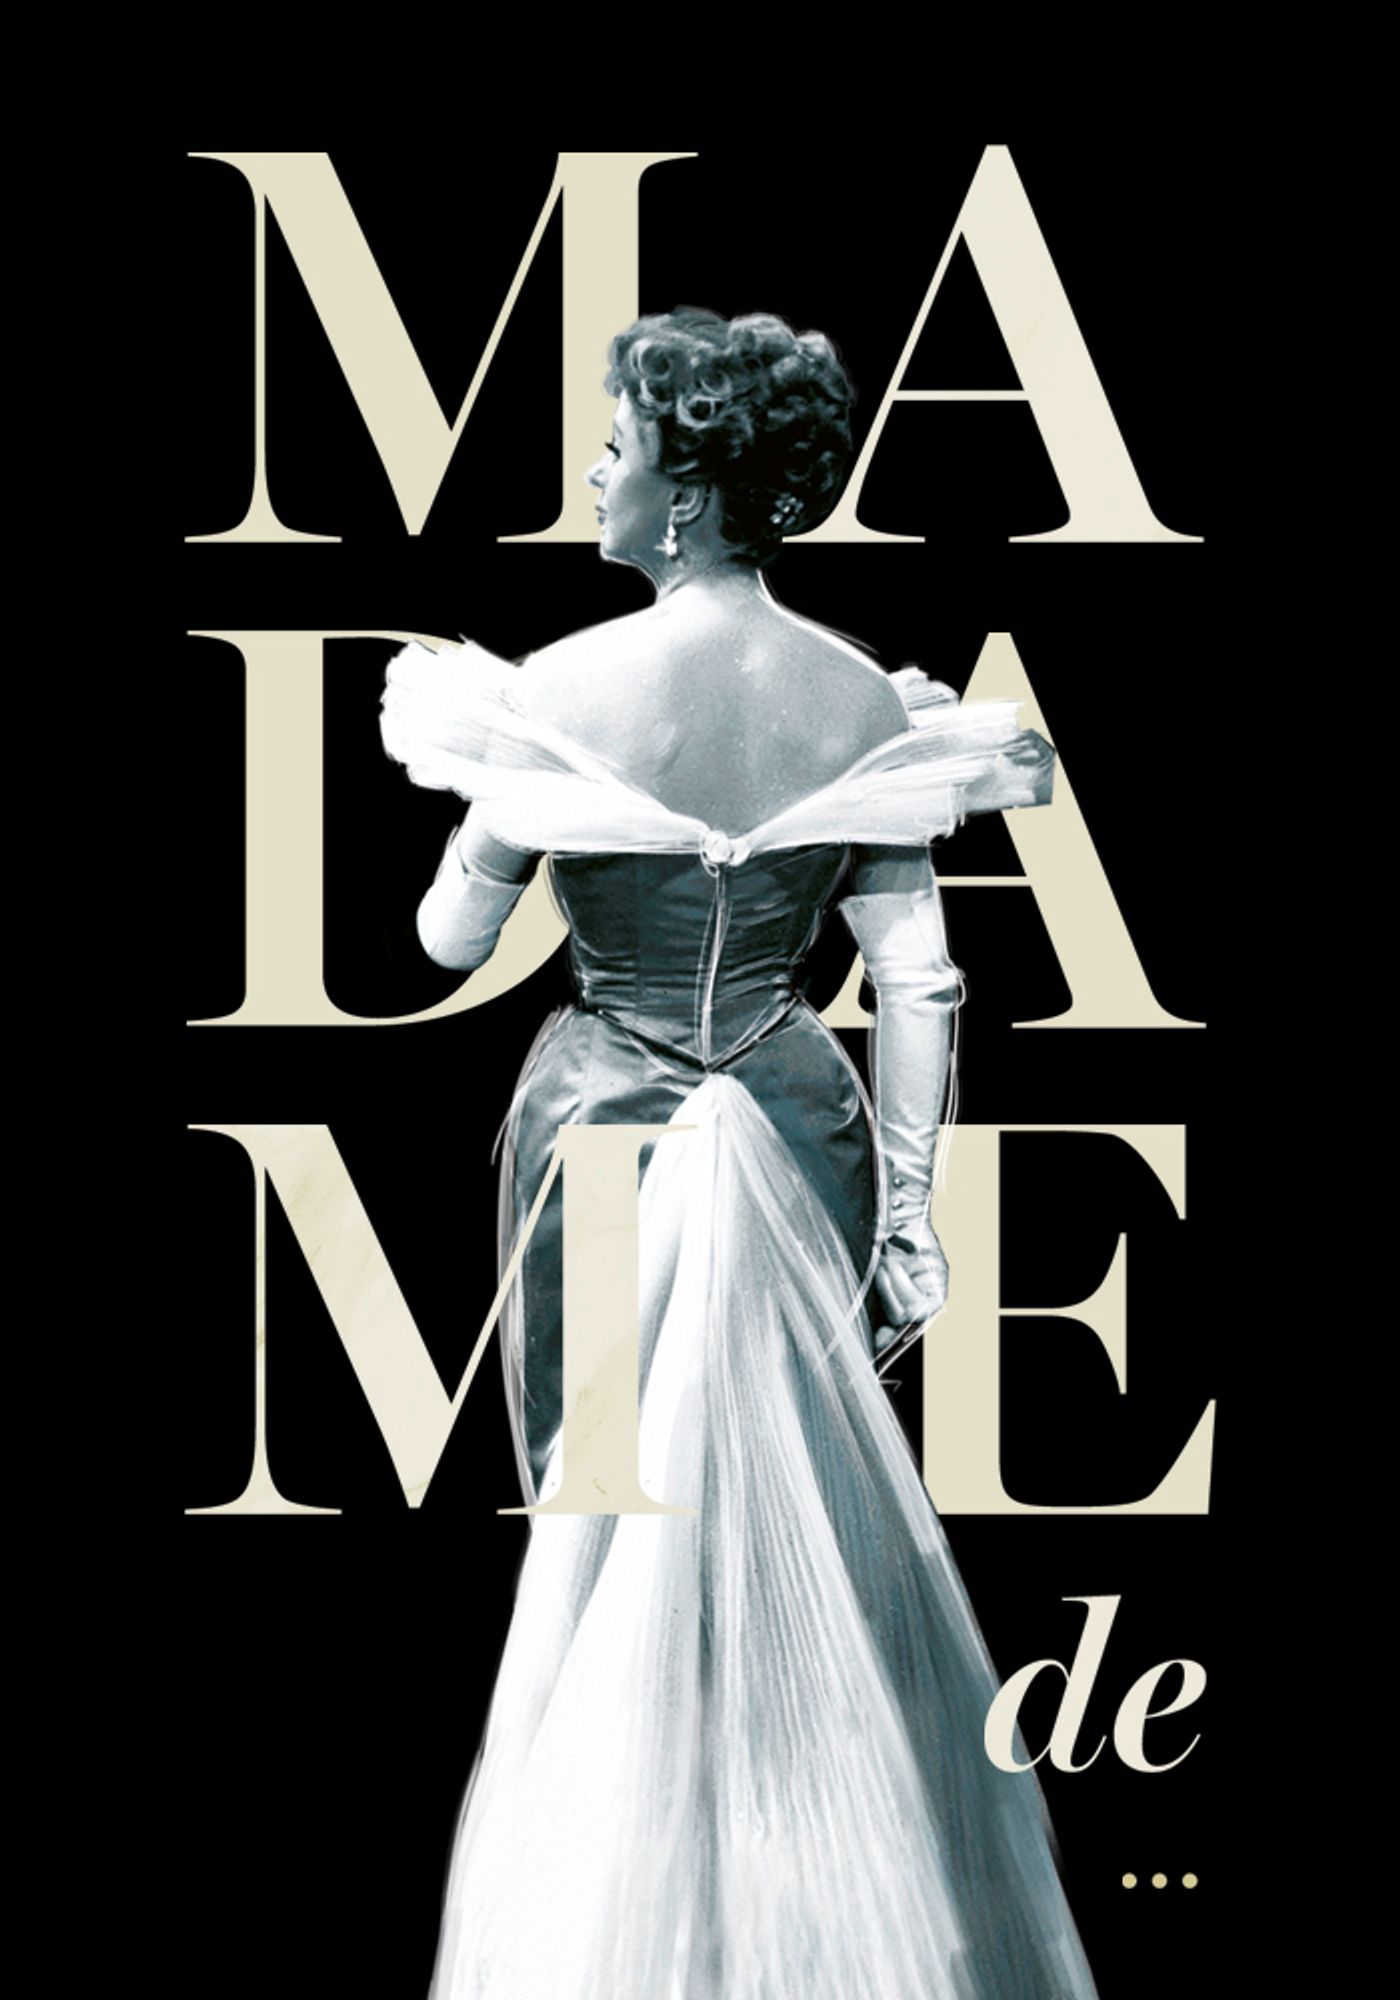 Madame de…